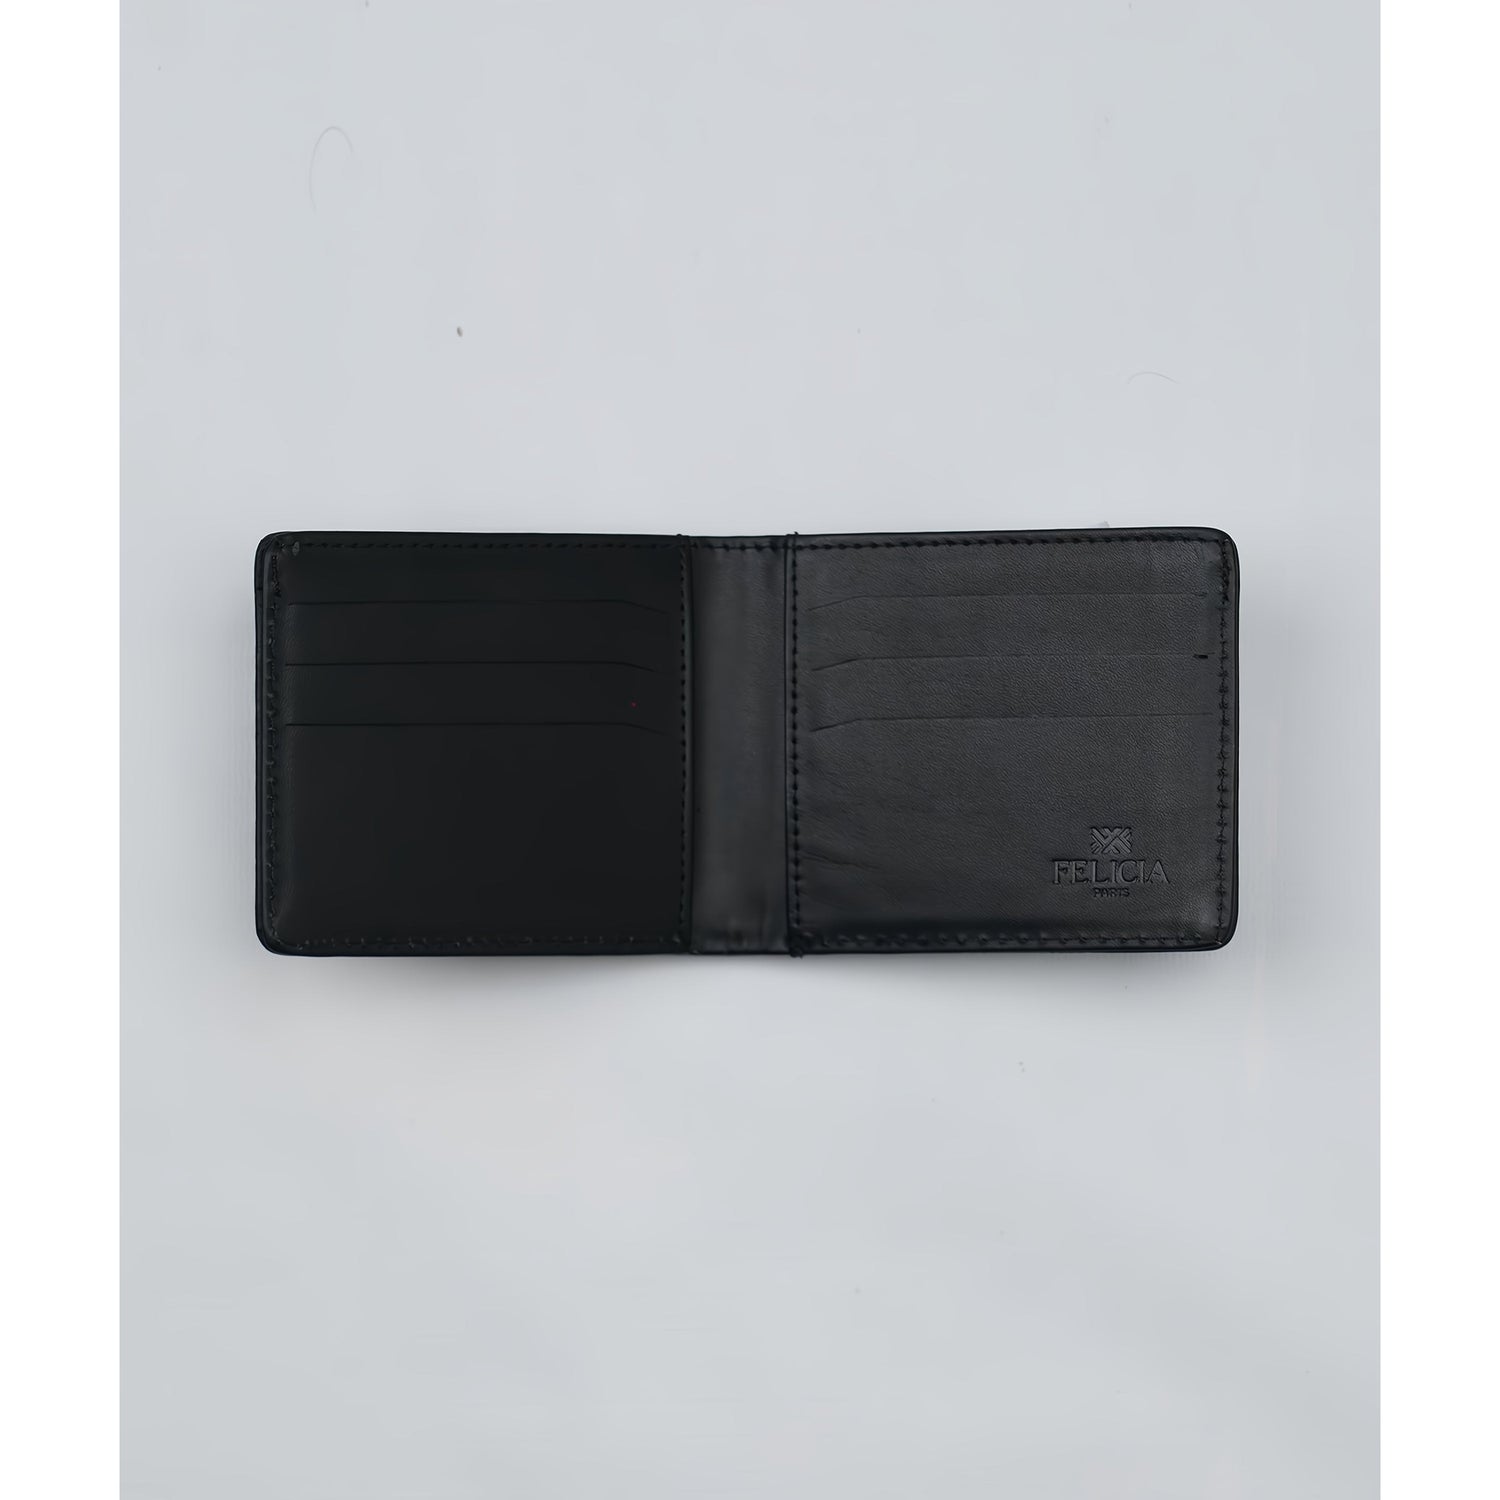 Black felicia logo wallet 1